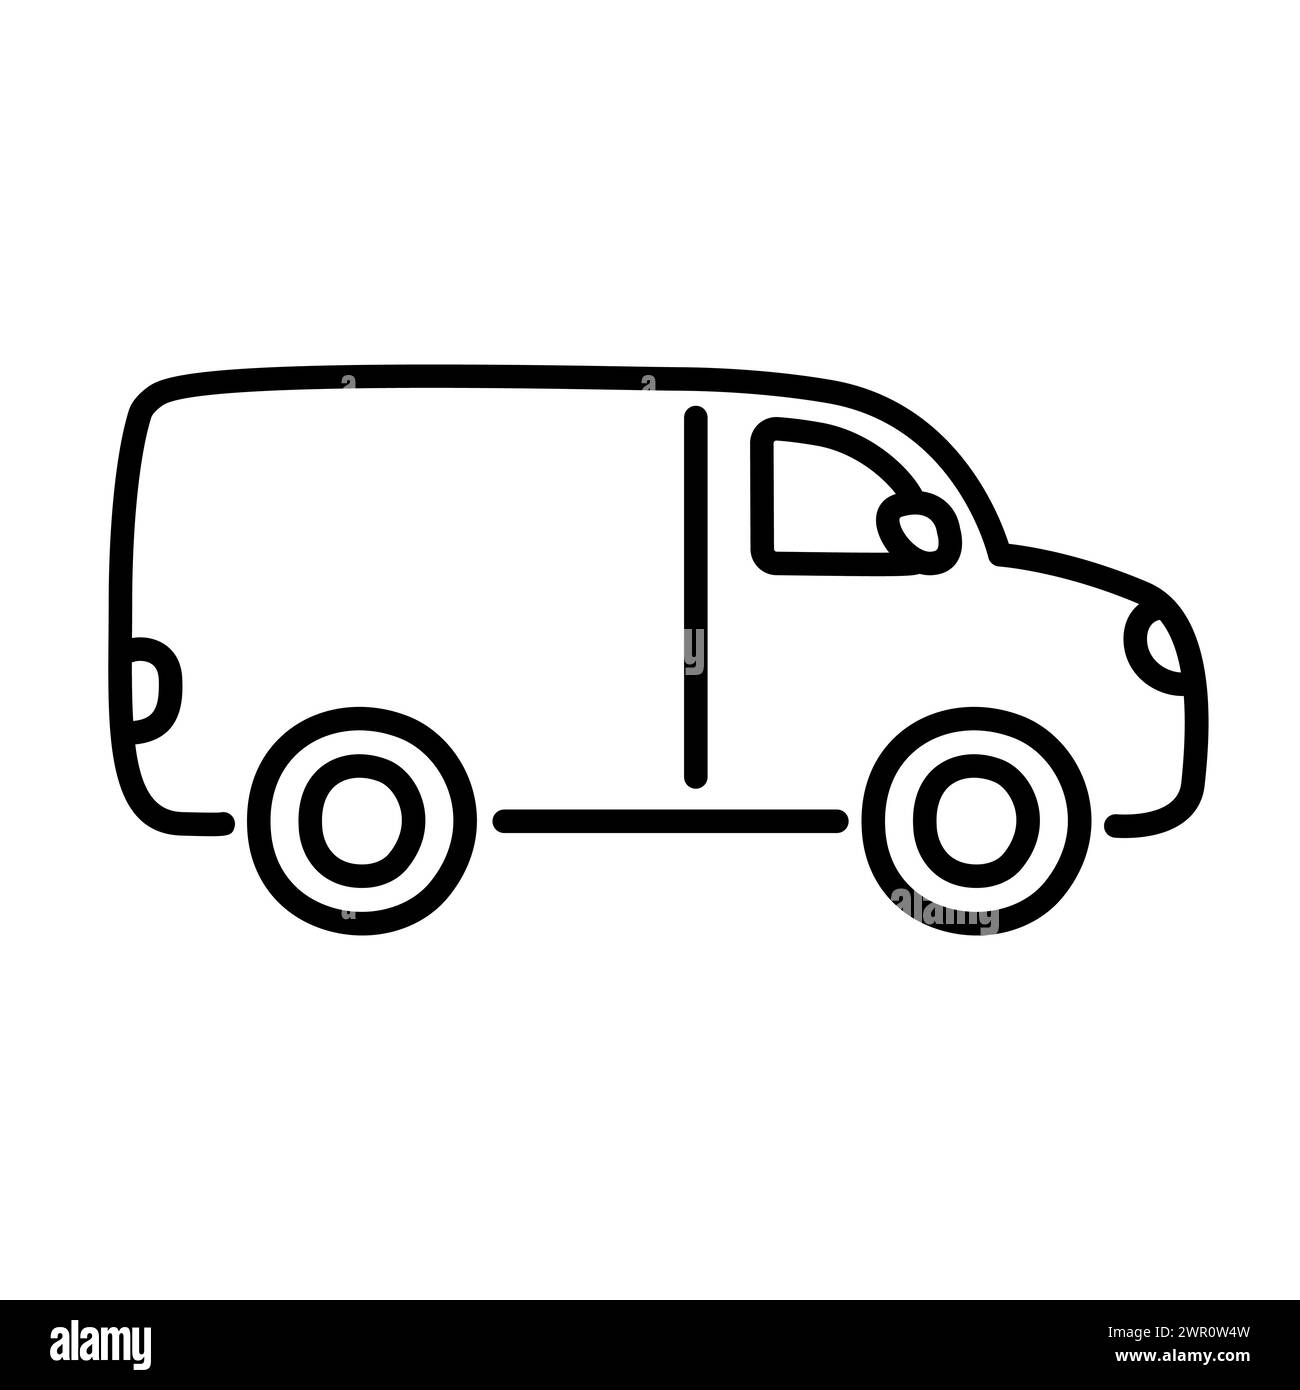 Lieferwagen Line Icon im niedlichen handgezeichneten Kritzelstil. Illustration von Vektorclips. Stock Vektor